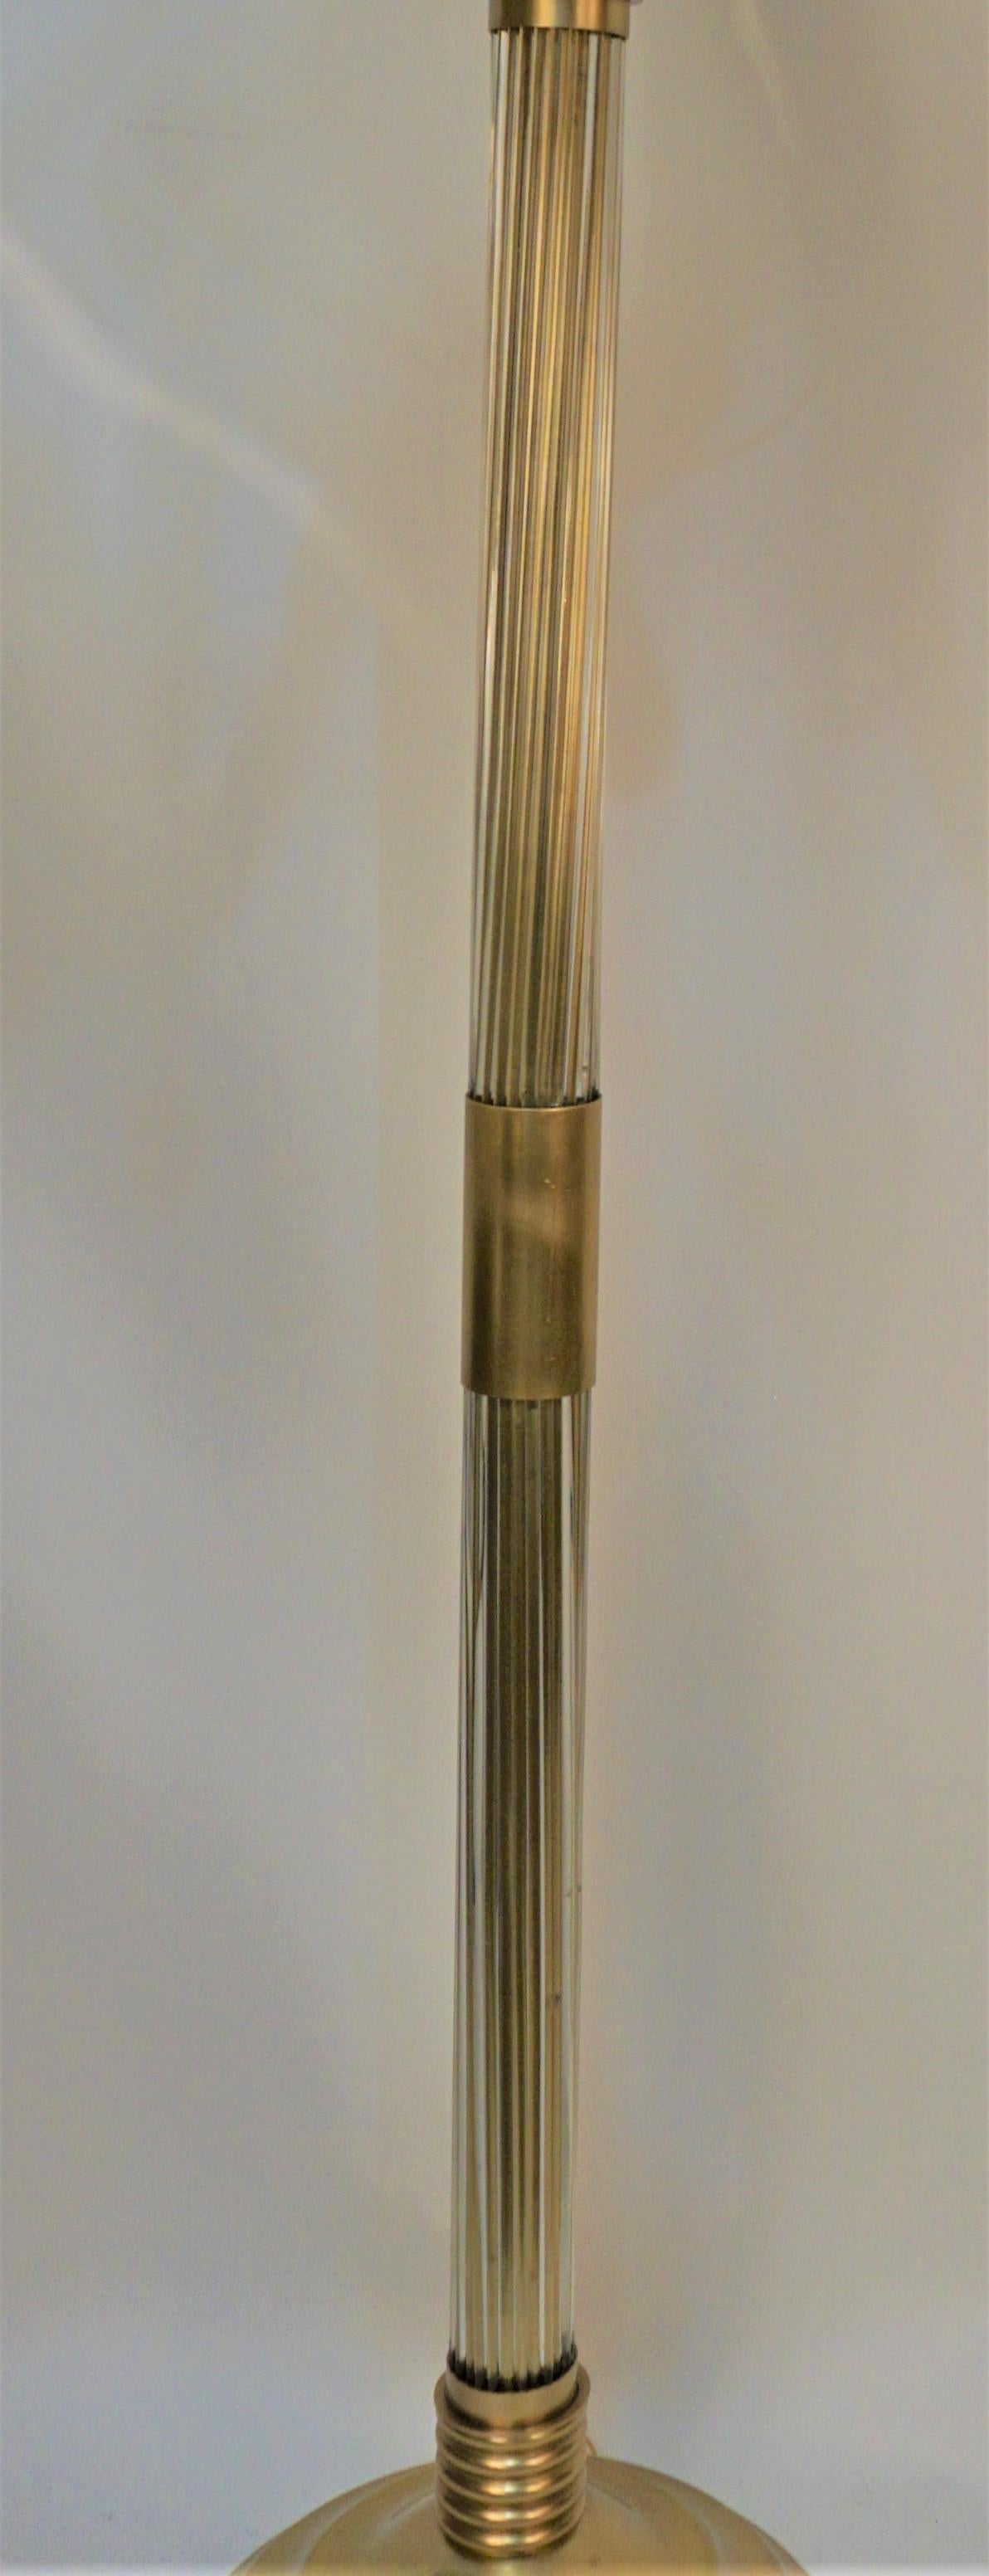 Lampadaire en bronze avec deux séries de tiges en verre transparent comme colonne centrale et quatre verres transparents étendus à partir de l'abat-jour torchère réflecteur vertical.
Quatre lampes, 100 watts max par lampe. 